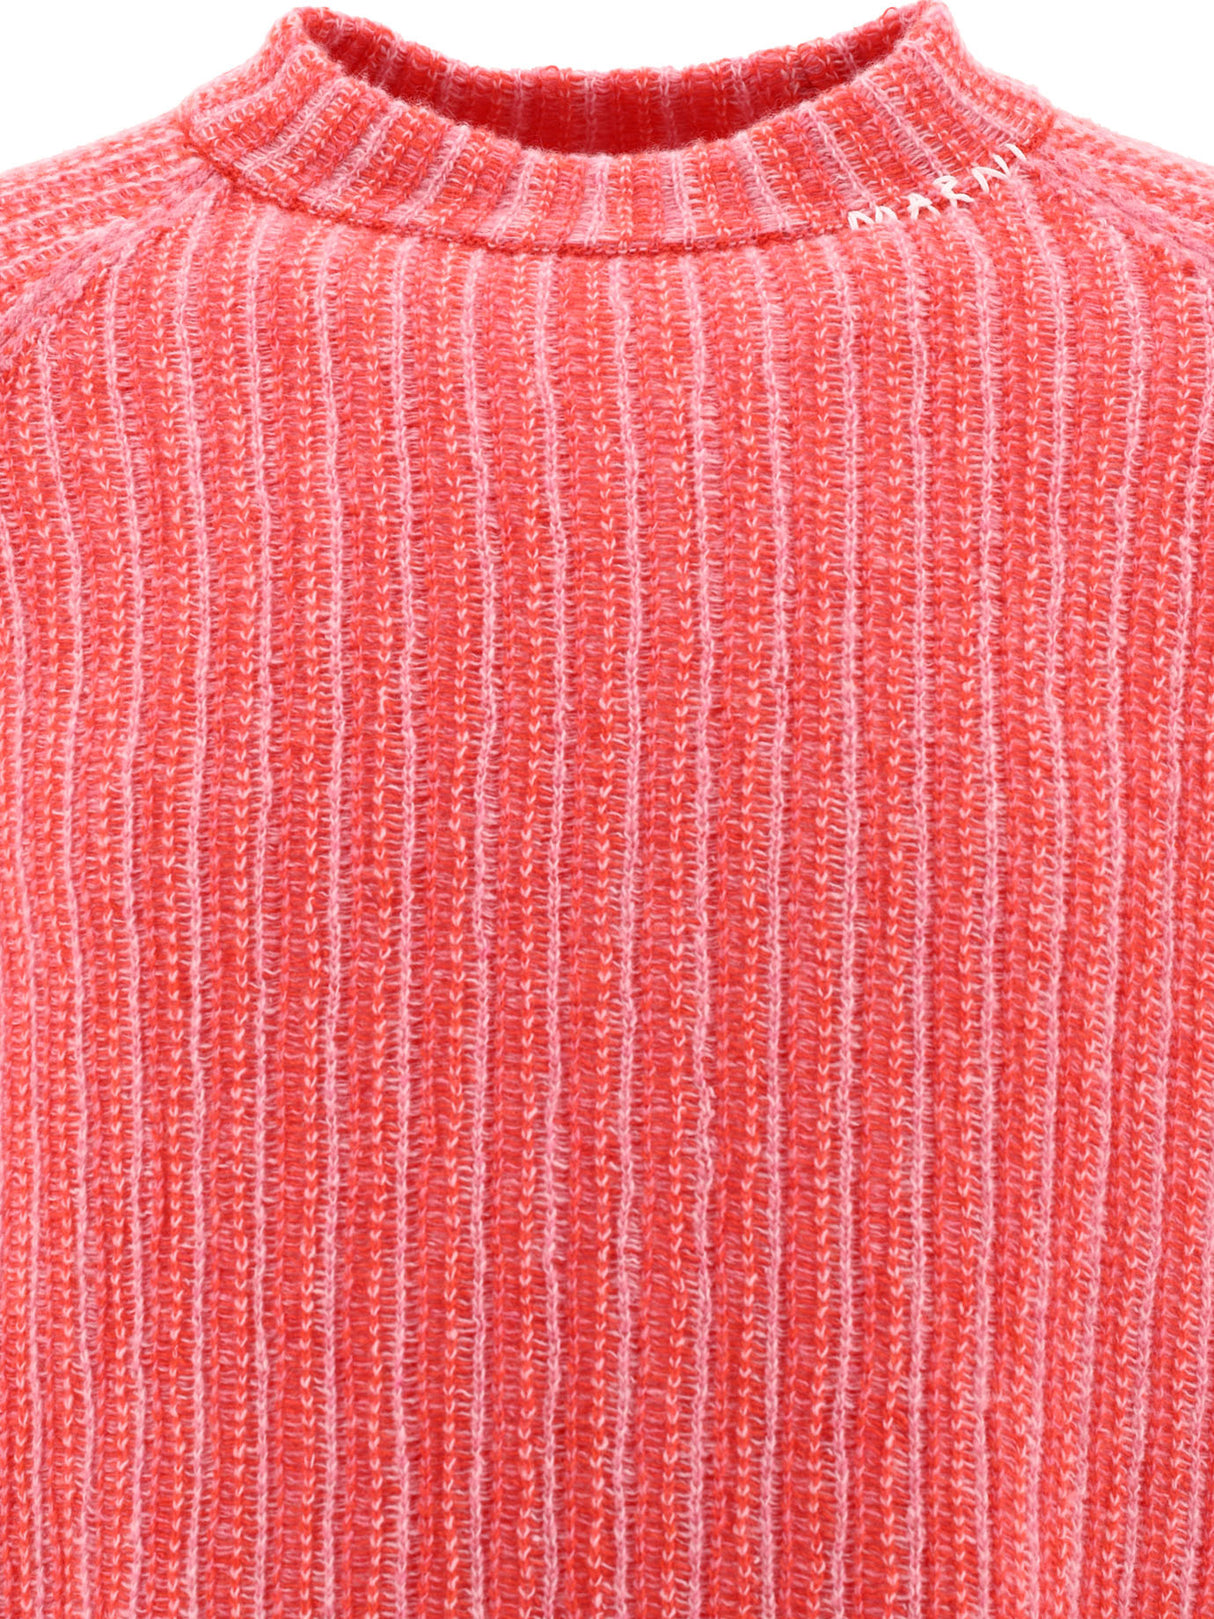 メンズ用赤色グラデーションストライプセーター - FW24コレクション